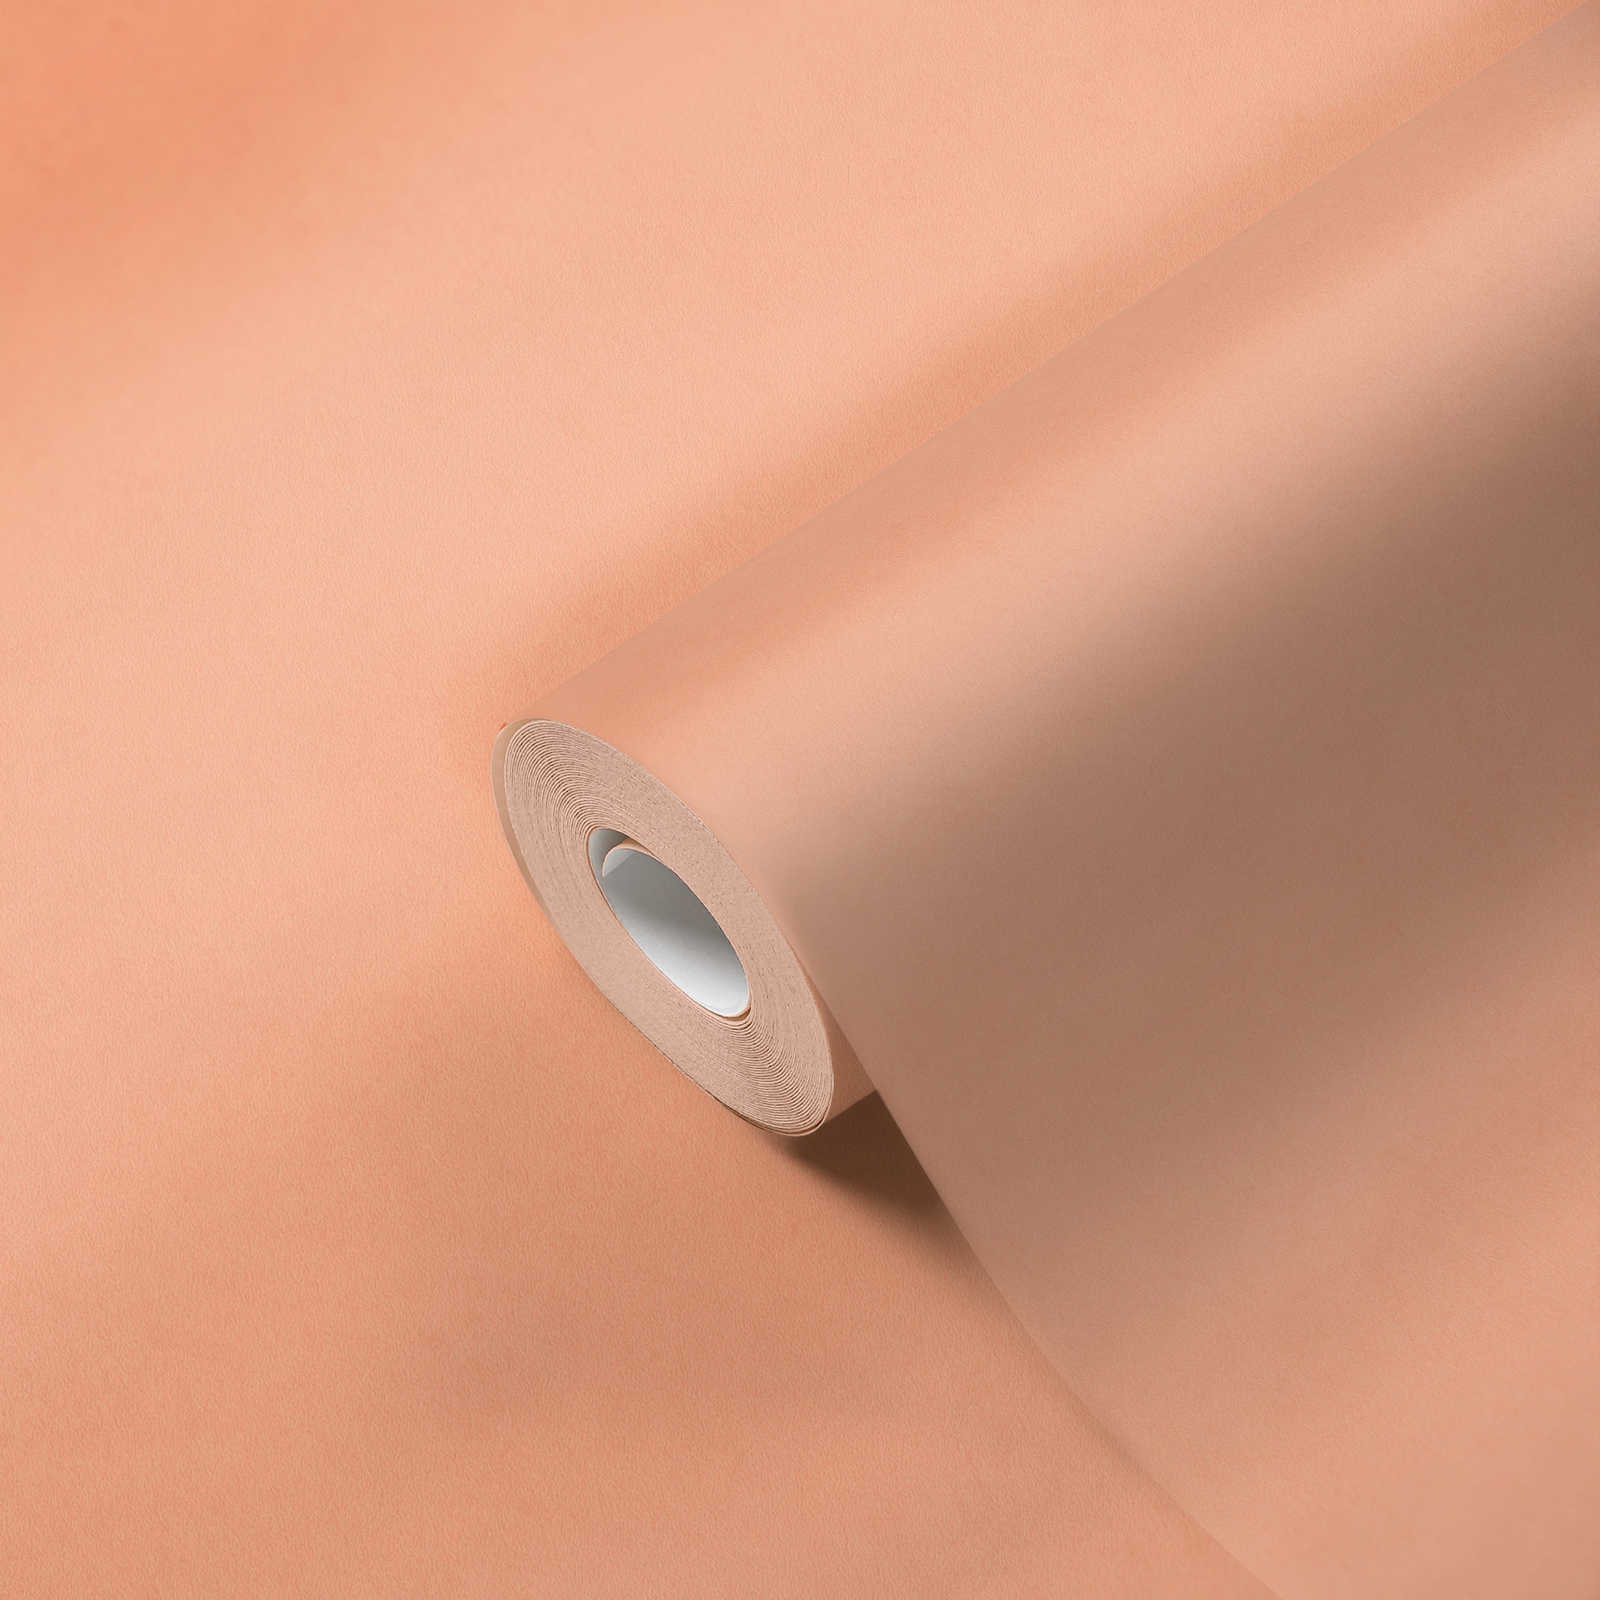             Non-woven wallpaper plain with light plaster pattern - orange
        